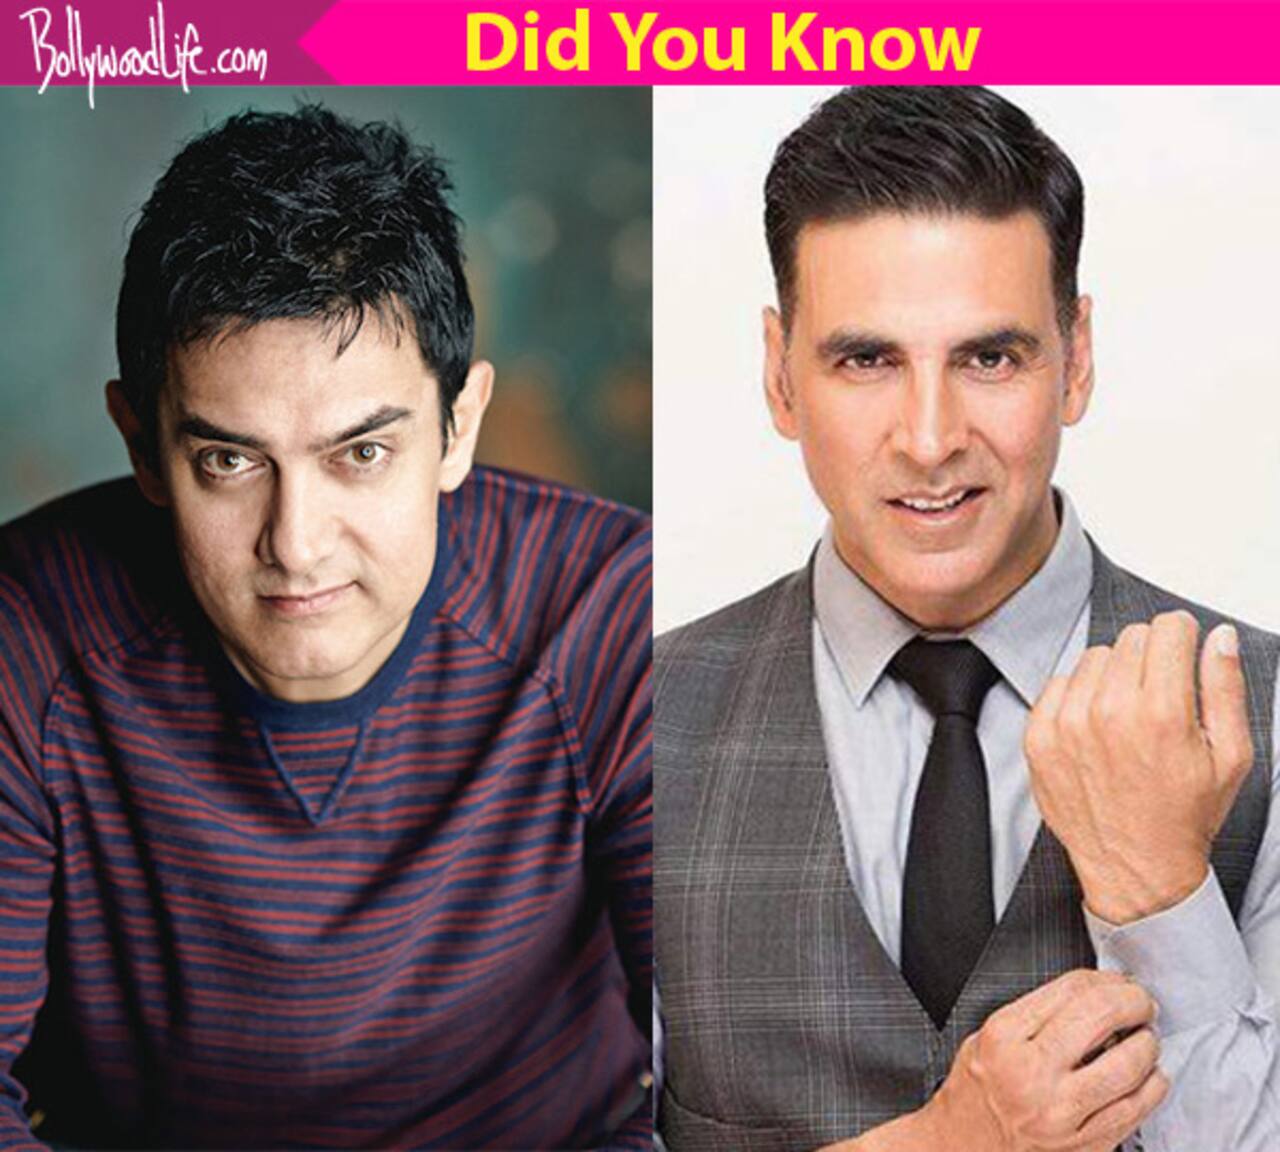 क्या आप जानते हैं अक्षय कुमार और आमिर खान के यह सुपरहिट गाने हिट हॉलीवुड फिल्म में इस्तमाल किये गए हैं।